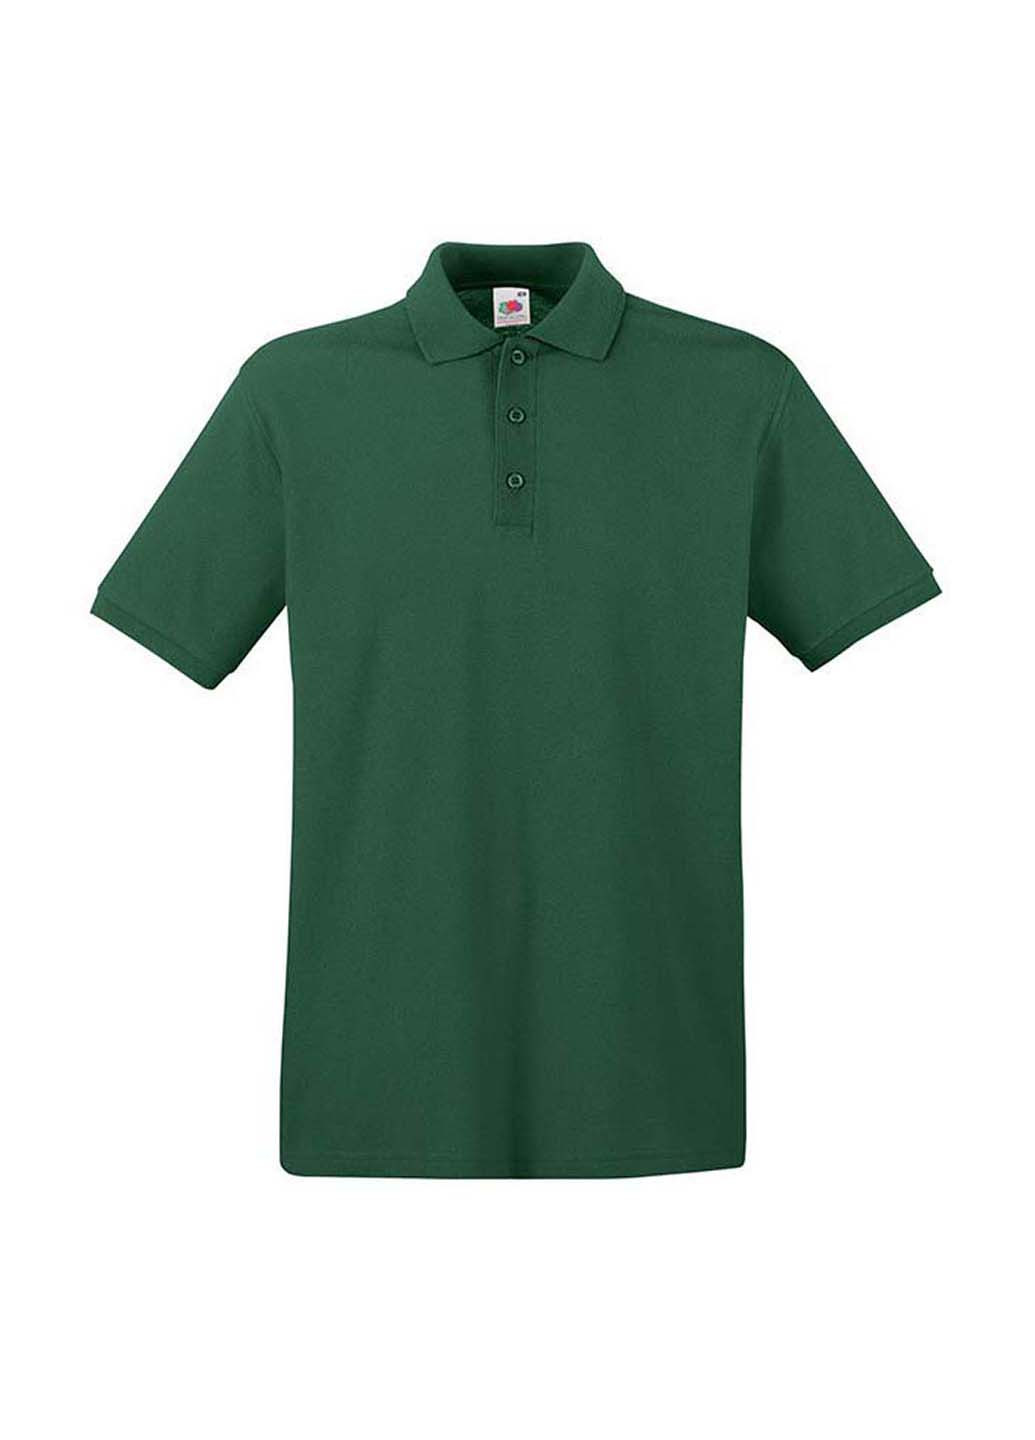 Темно-зеленая футболка-поло для мужчин Fruit of the Loom